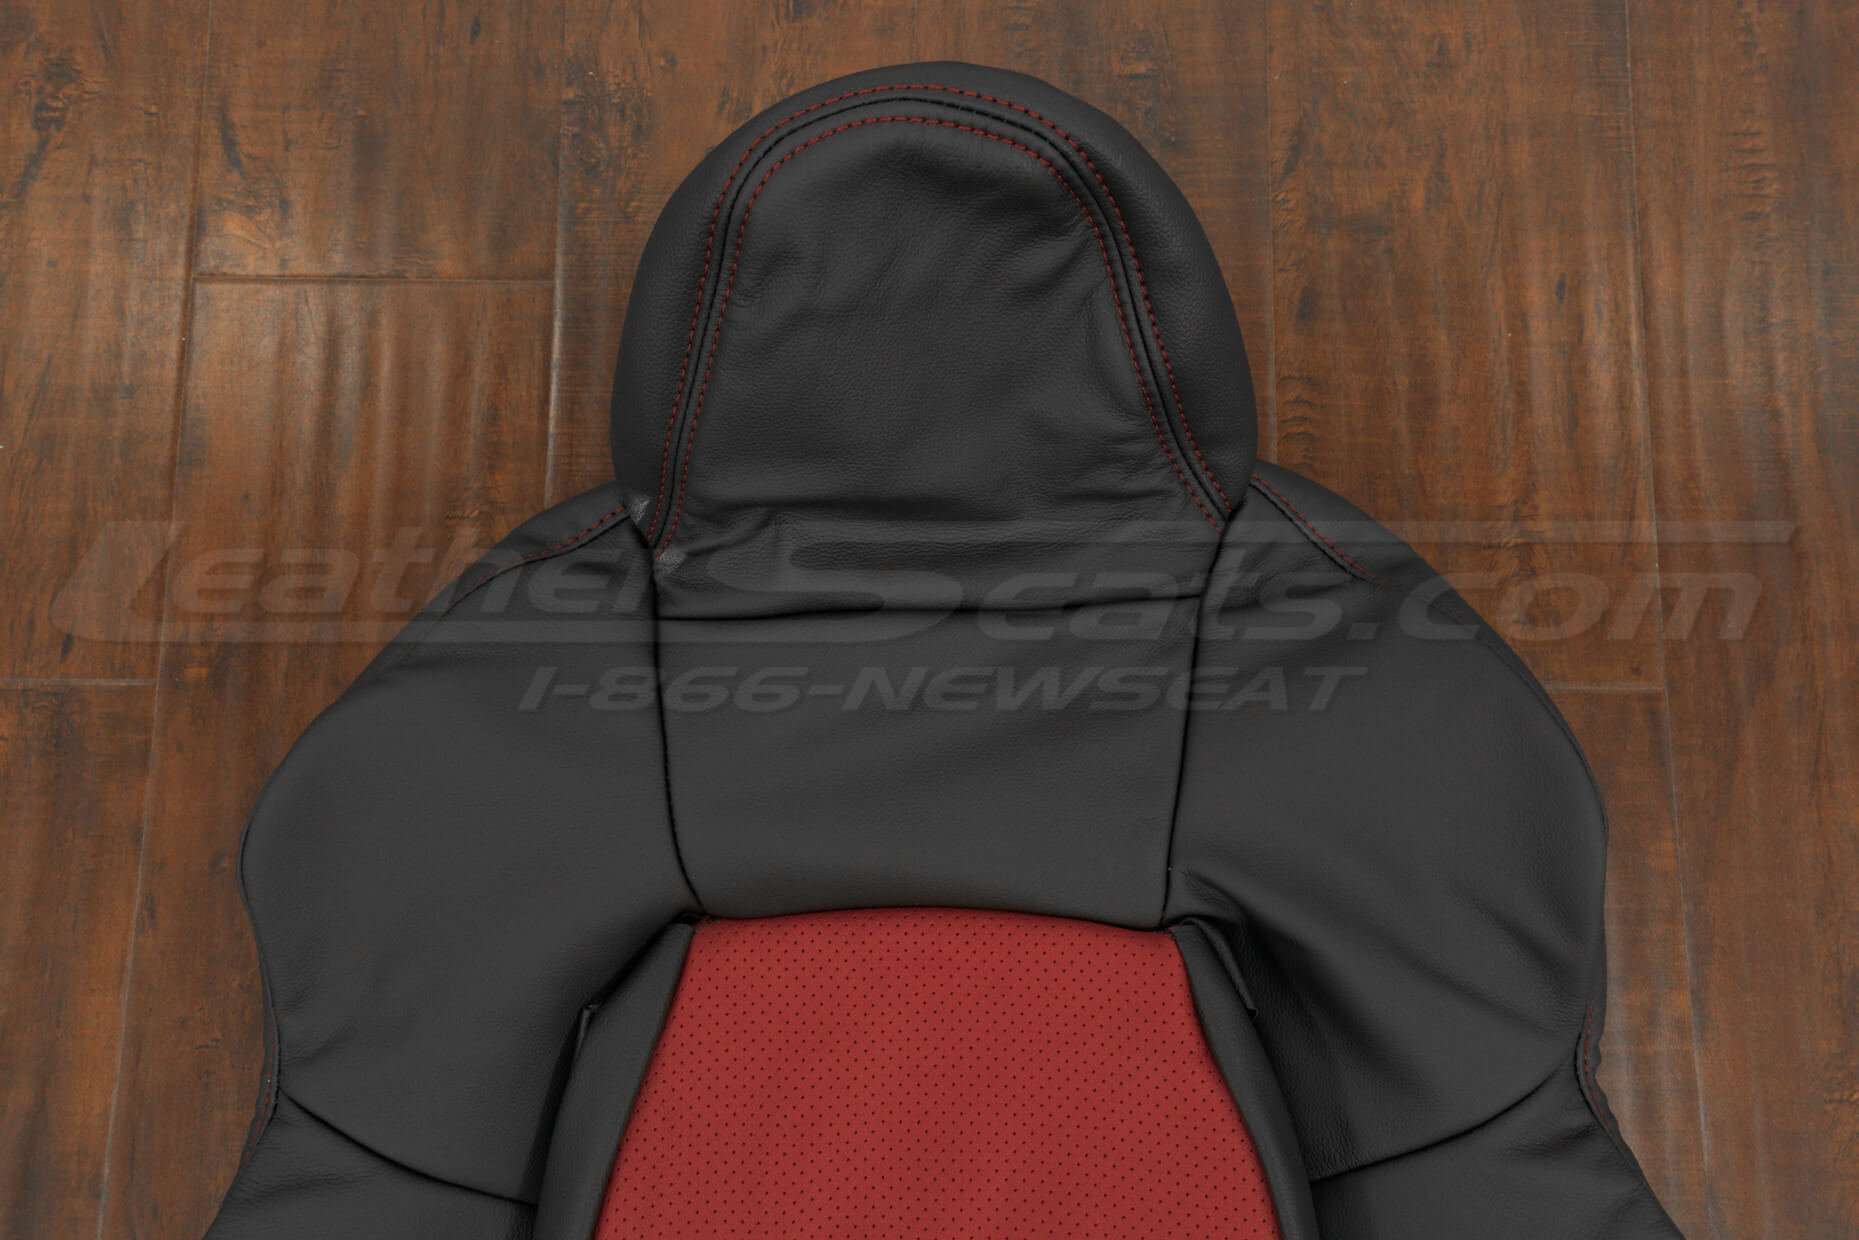 Honda S2000 Roadster Upholstery Kit - Black & Red - Upper backrest and headrest